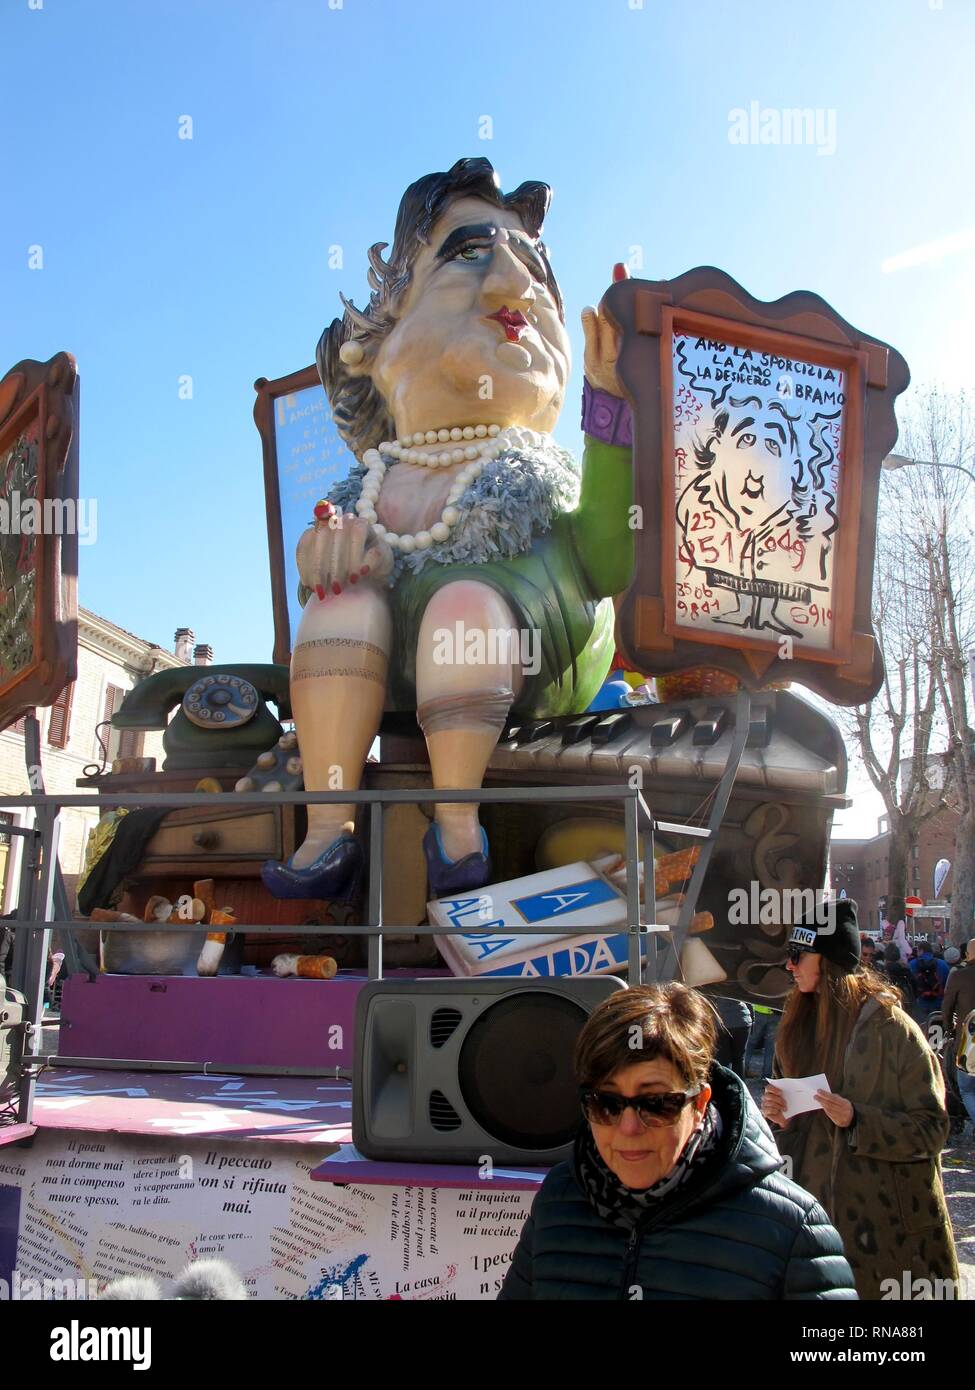 Traditional siflata of the wagons at the Fano Carnival 2019, dedicated to Alda Merini (Vito Panico, Fano - 2019-02-17) p.s. la foto e' utilizzabile nel rispetto del contesto in cui e' stata scattata, e senza intento diffamatorio del decoro delle persone rappresentate Stock Photo